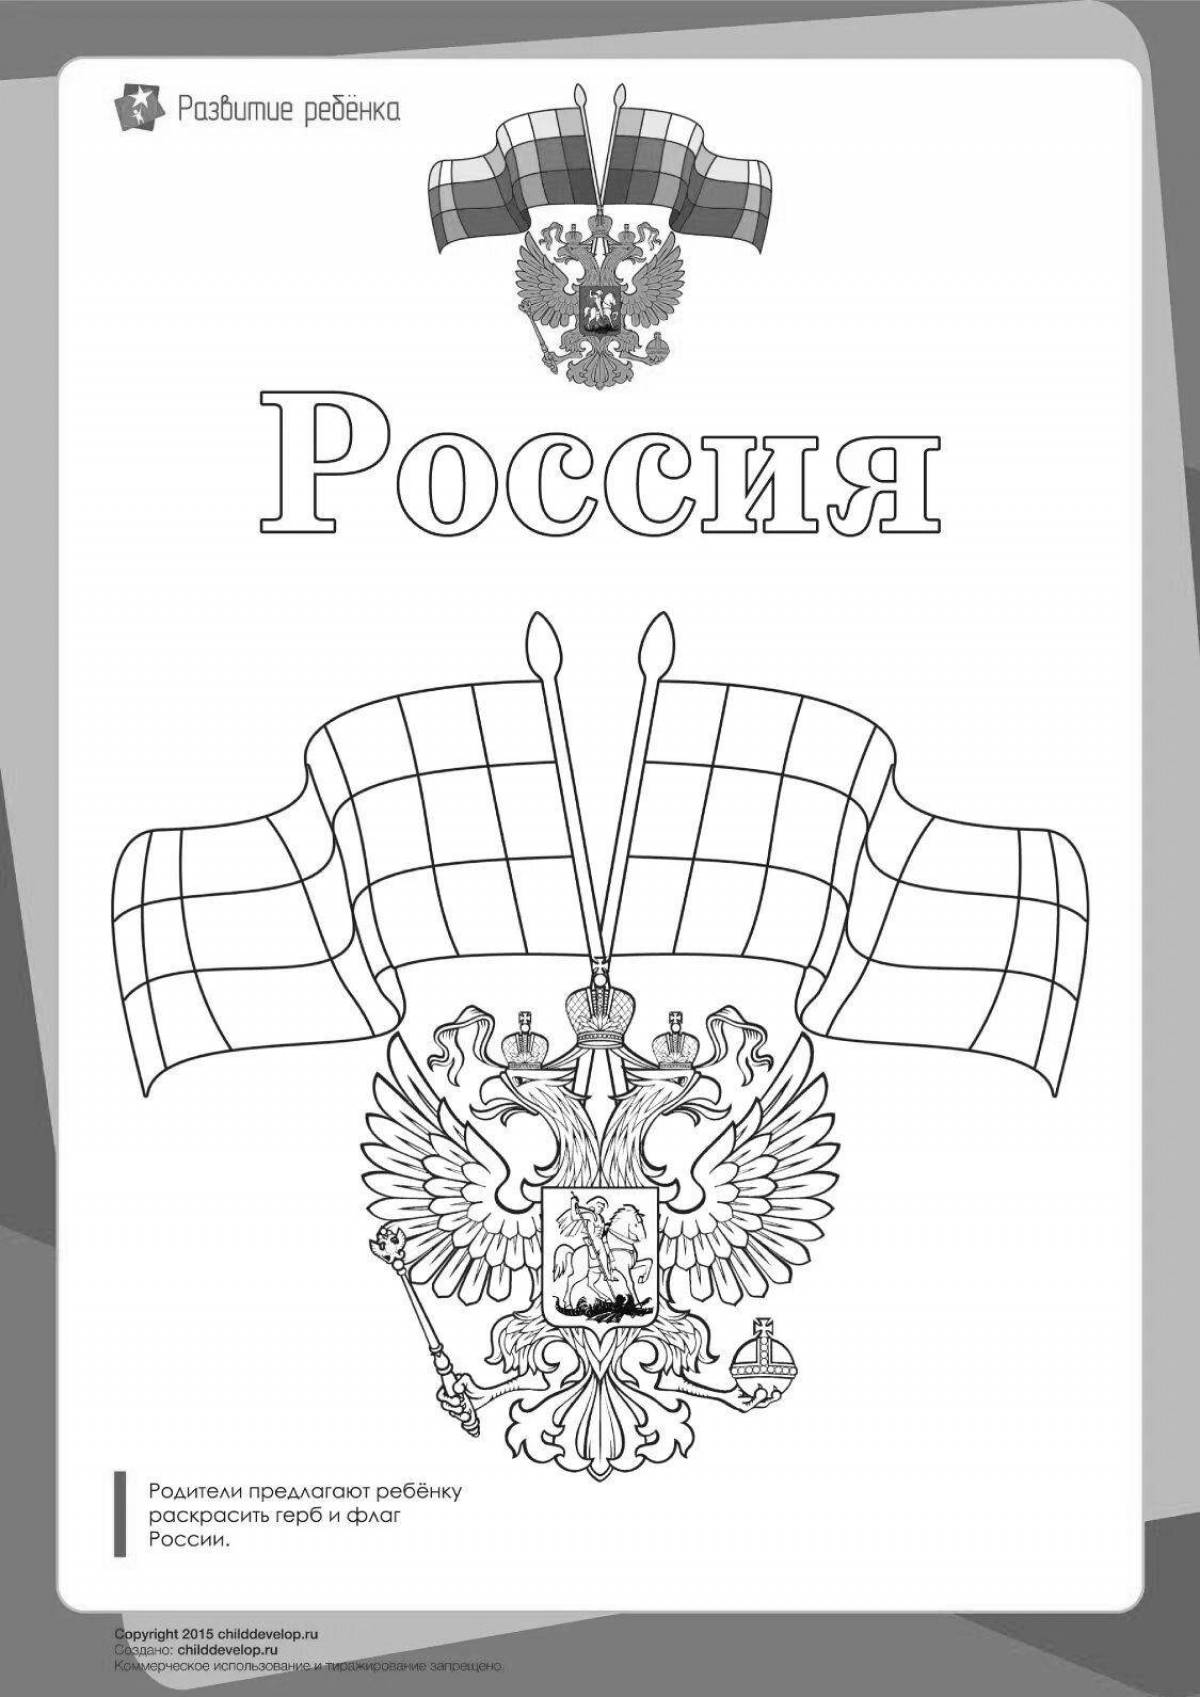 Большой флаг и герб россии